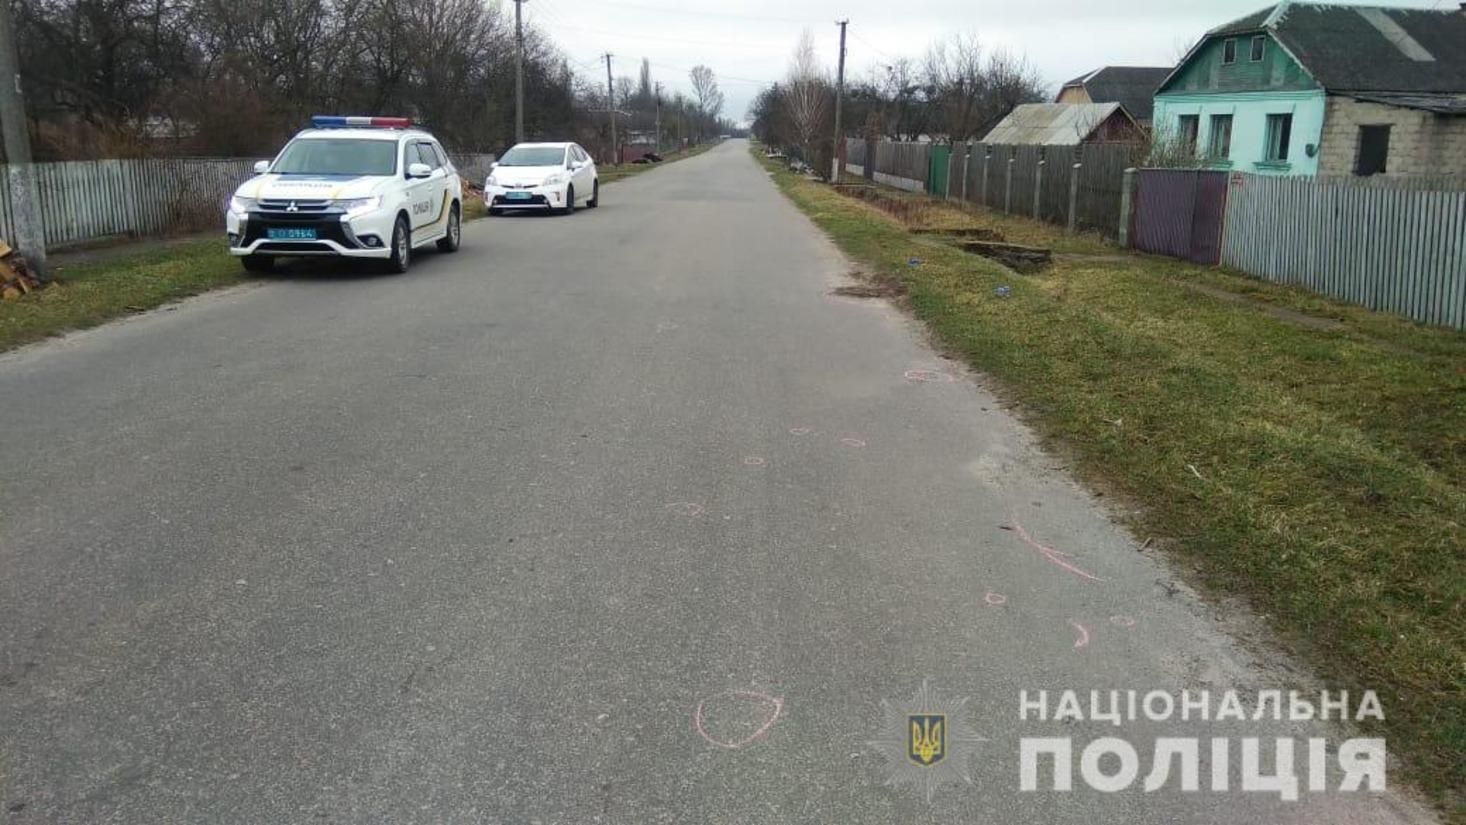 Смертельное ДТП в Малиновке 3 апреля 2021: владелец авто – полицейский